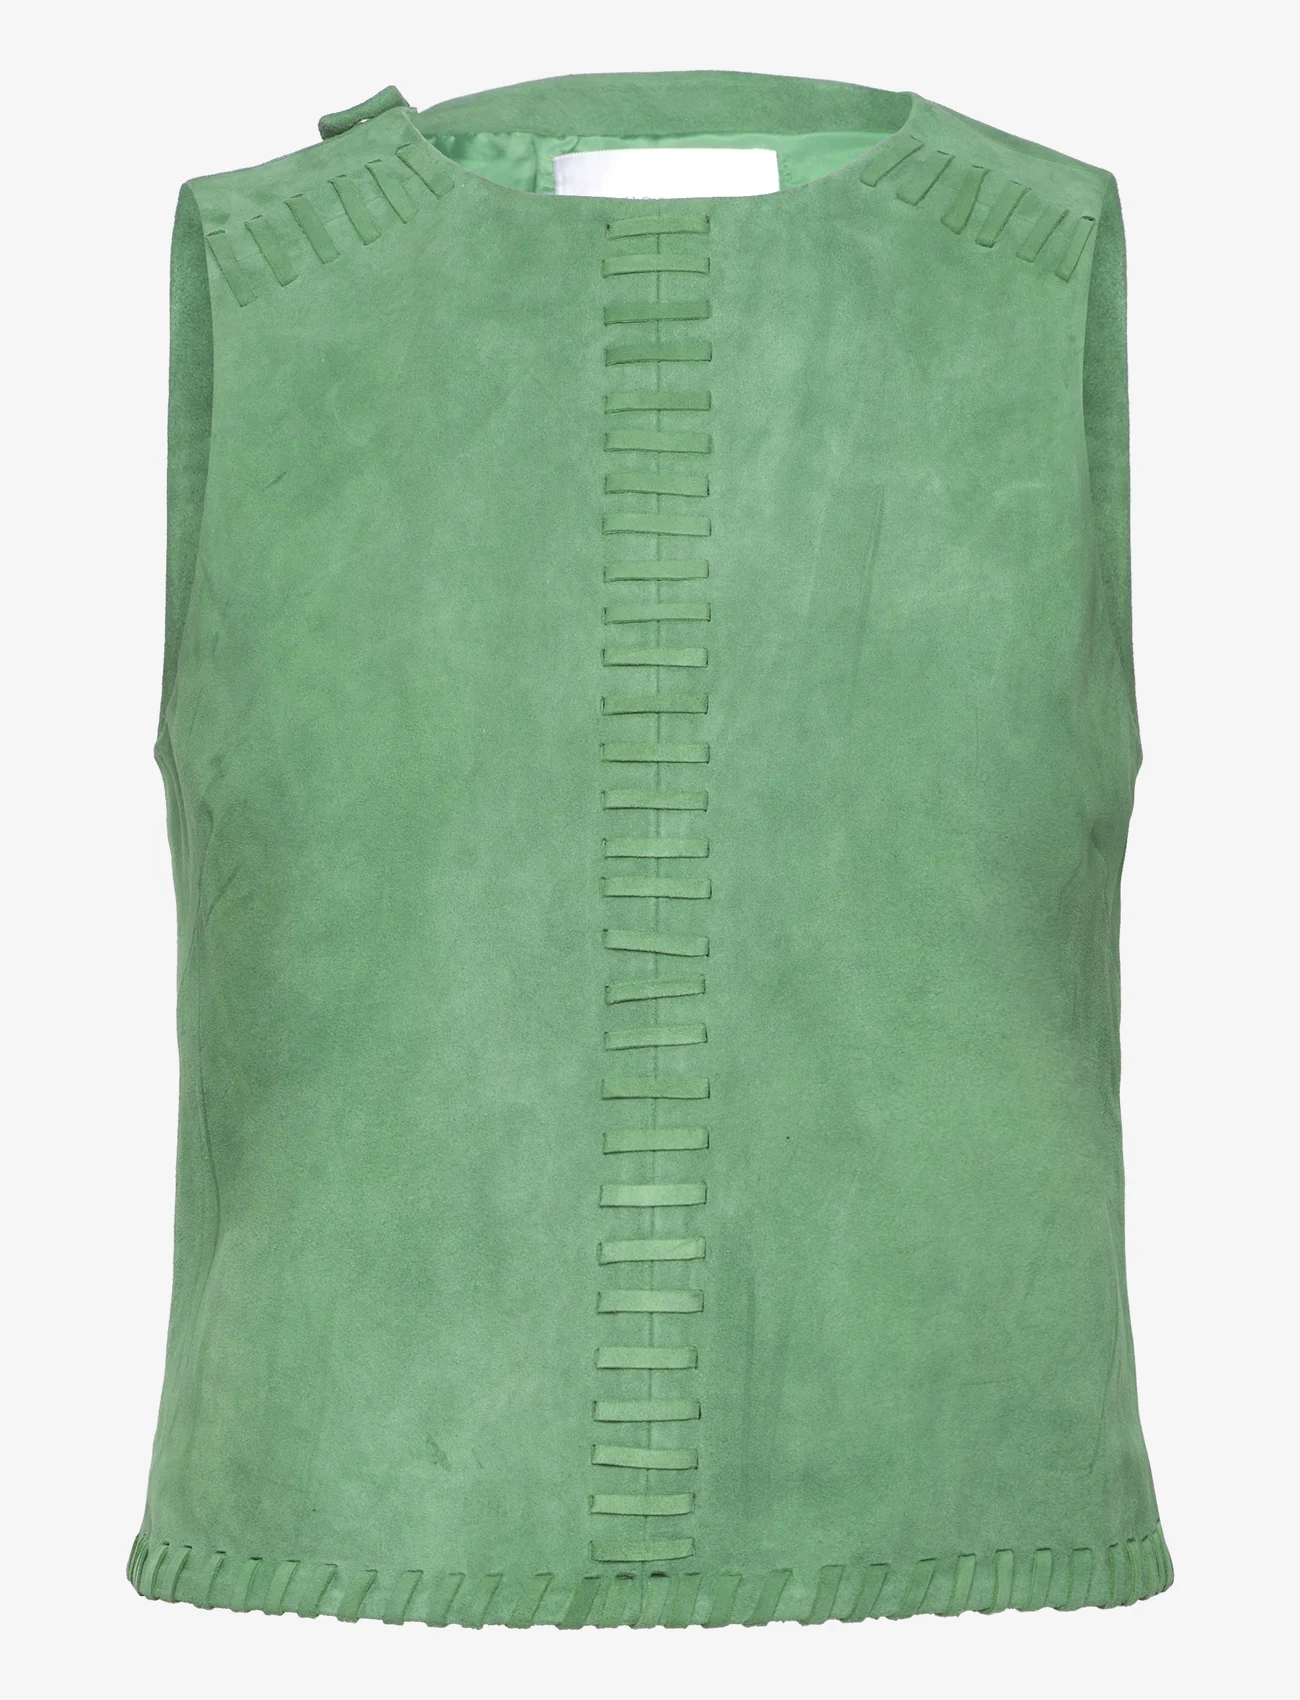 Hosbjerg - Nalyh Suede Top - blouses zonder mouwen - amazon green - 0